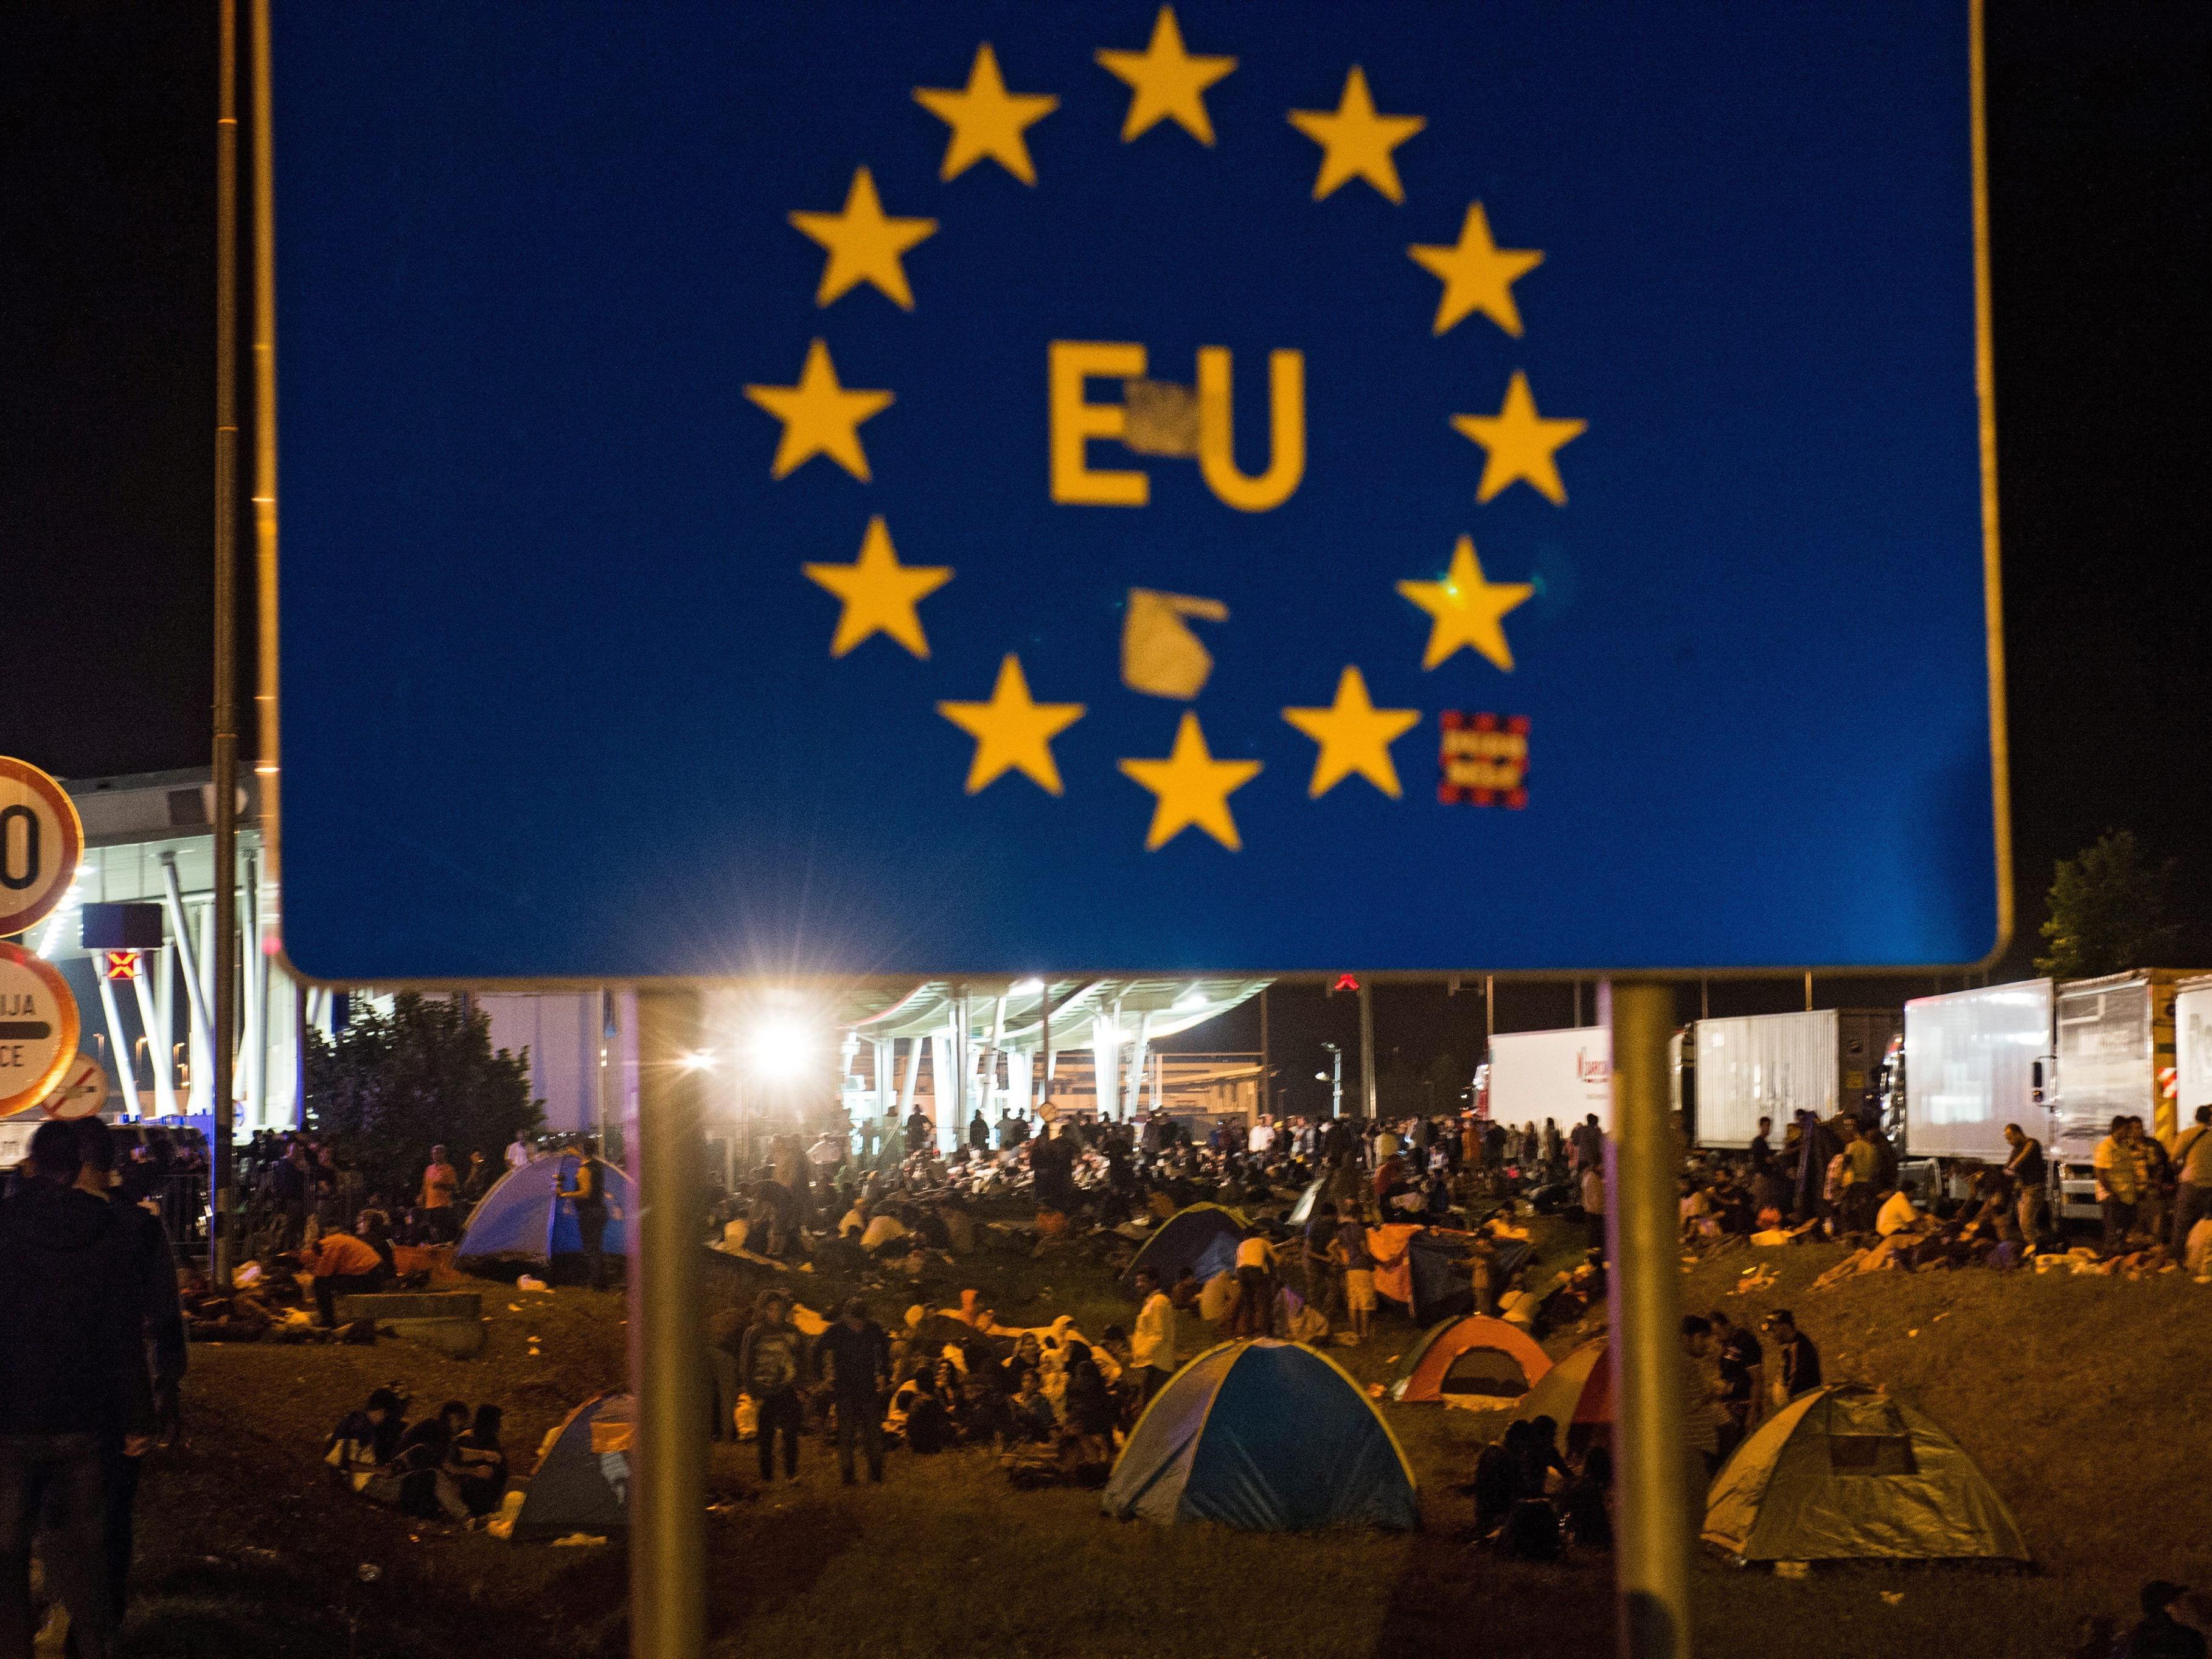 Krisentreffen: EU-Minister suchen Kompromiss zu Flüchtlingsfrage